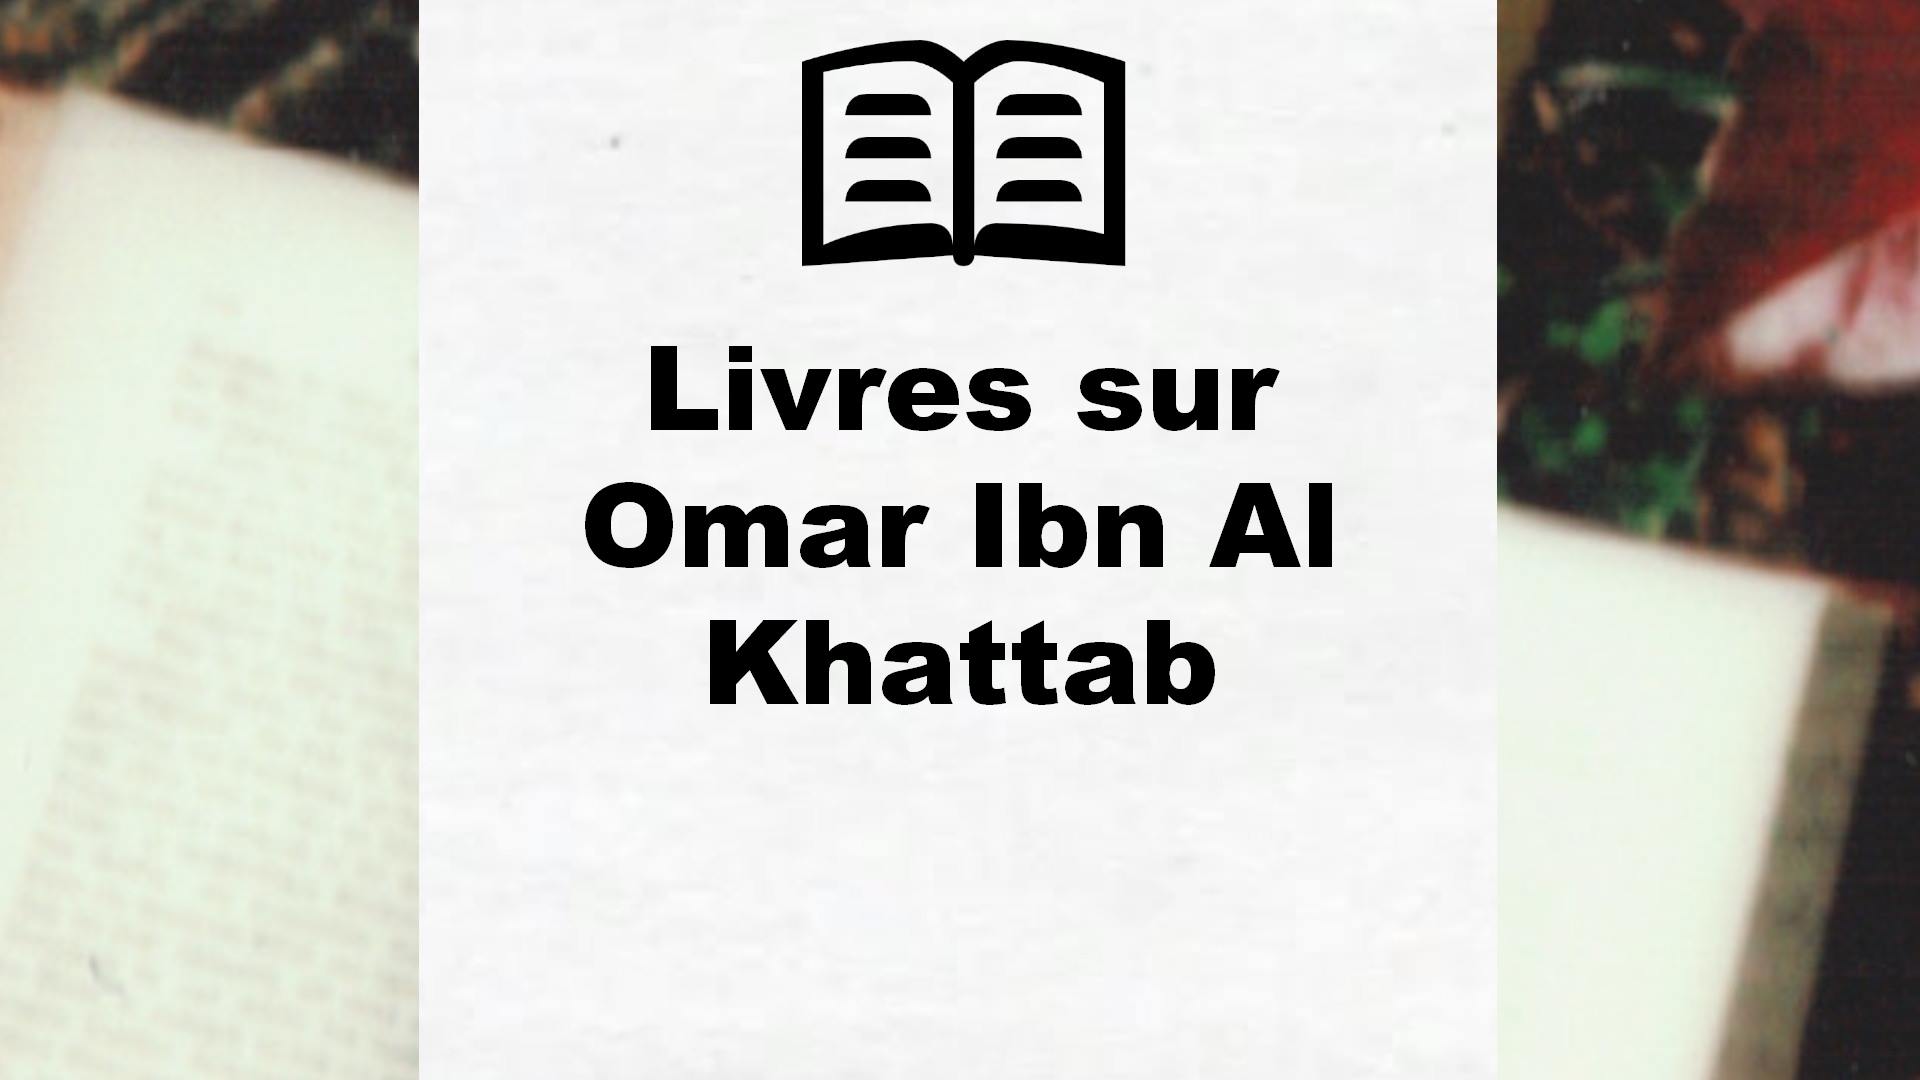 Livres sur Omar Ibn Al Khattab